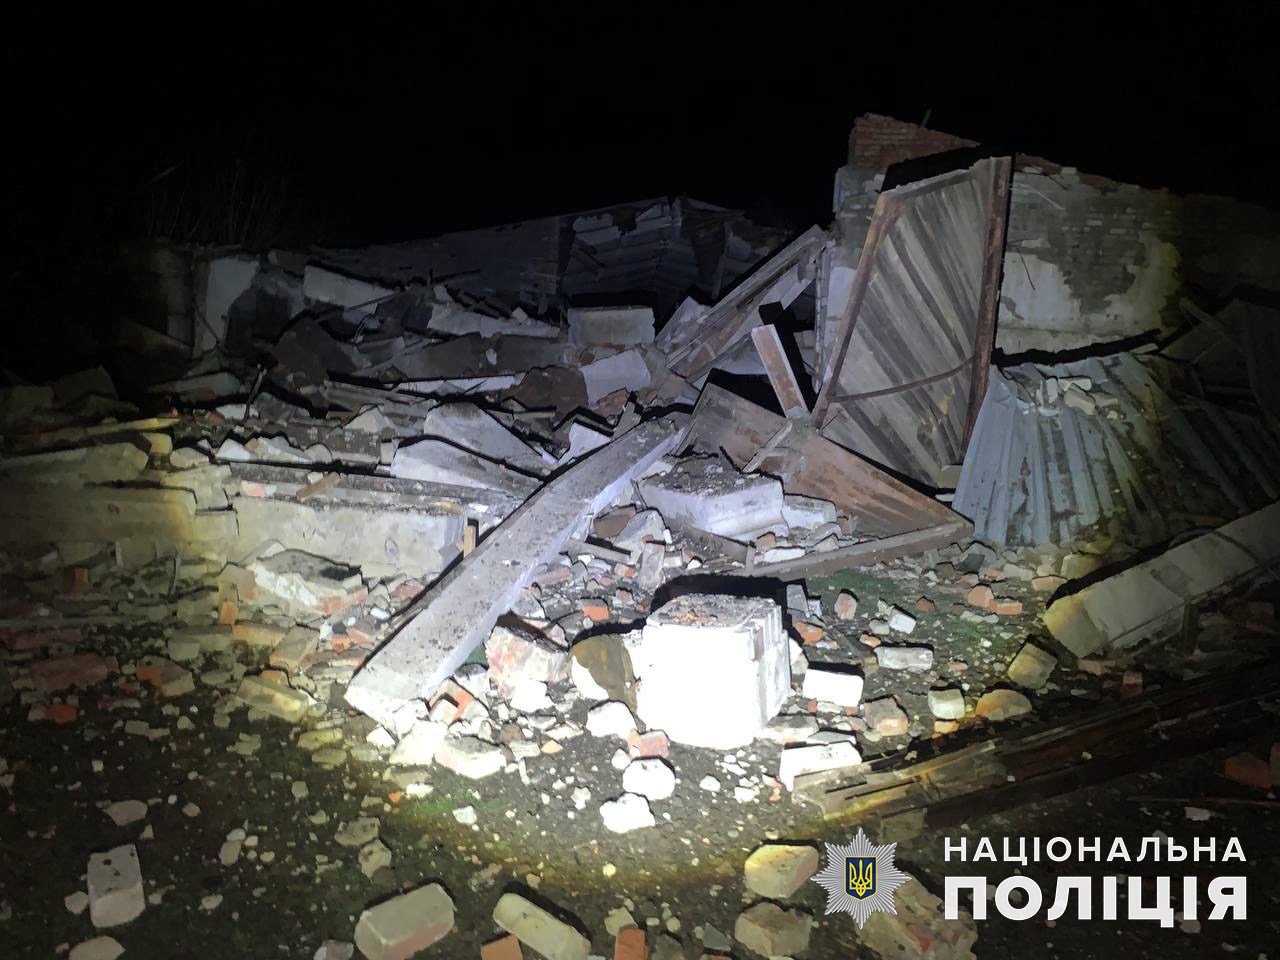 Доба на Донеччині: окупанти вбили п’ятьох цивільних, зруйнували ще одну школу, кінотеатр та кілька будинків 2